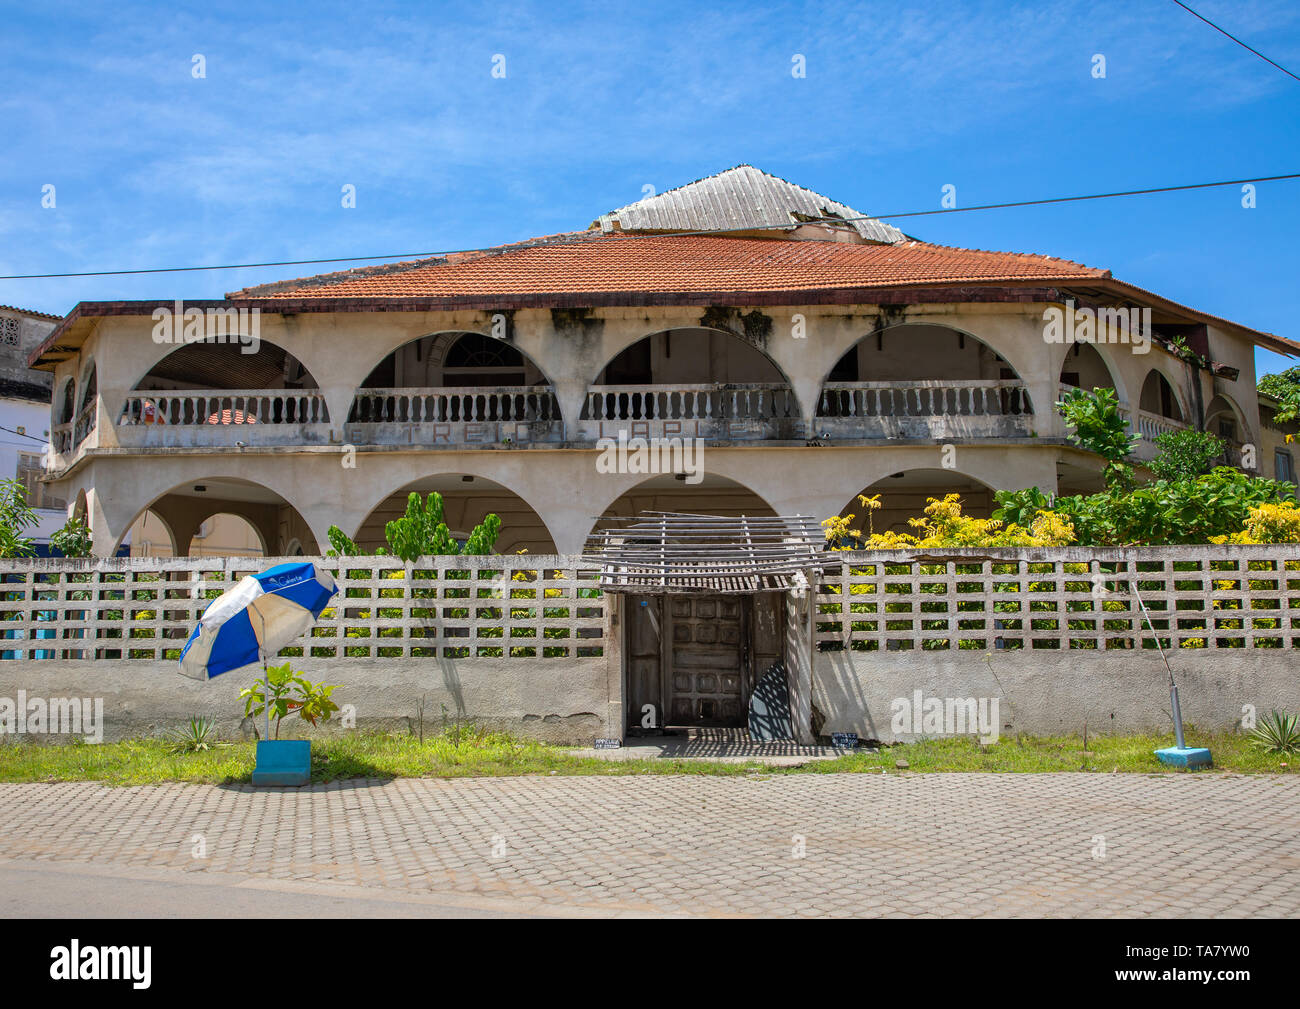 Ancien bâtiment colonial français dans le domaine du patrimoine mondial de l'UNESCO, Sud-Comoé, Grand-Bassam, Côte d'Ivoire Banque D'Images